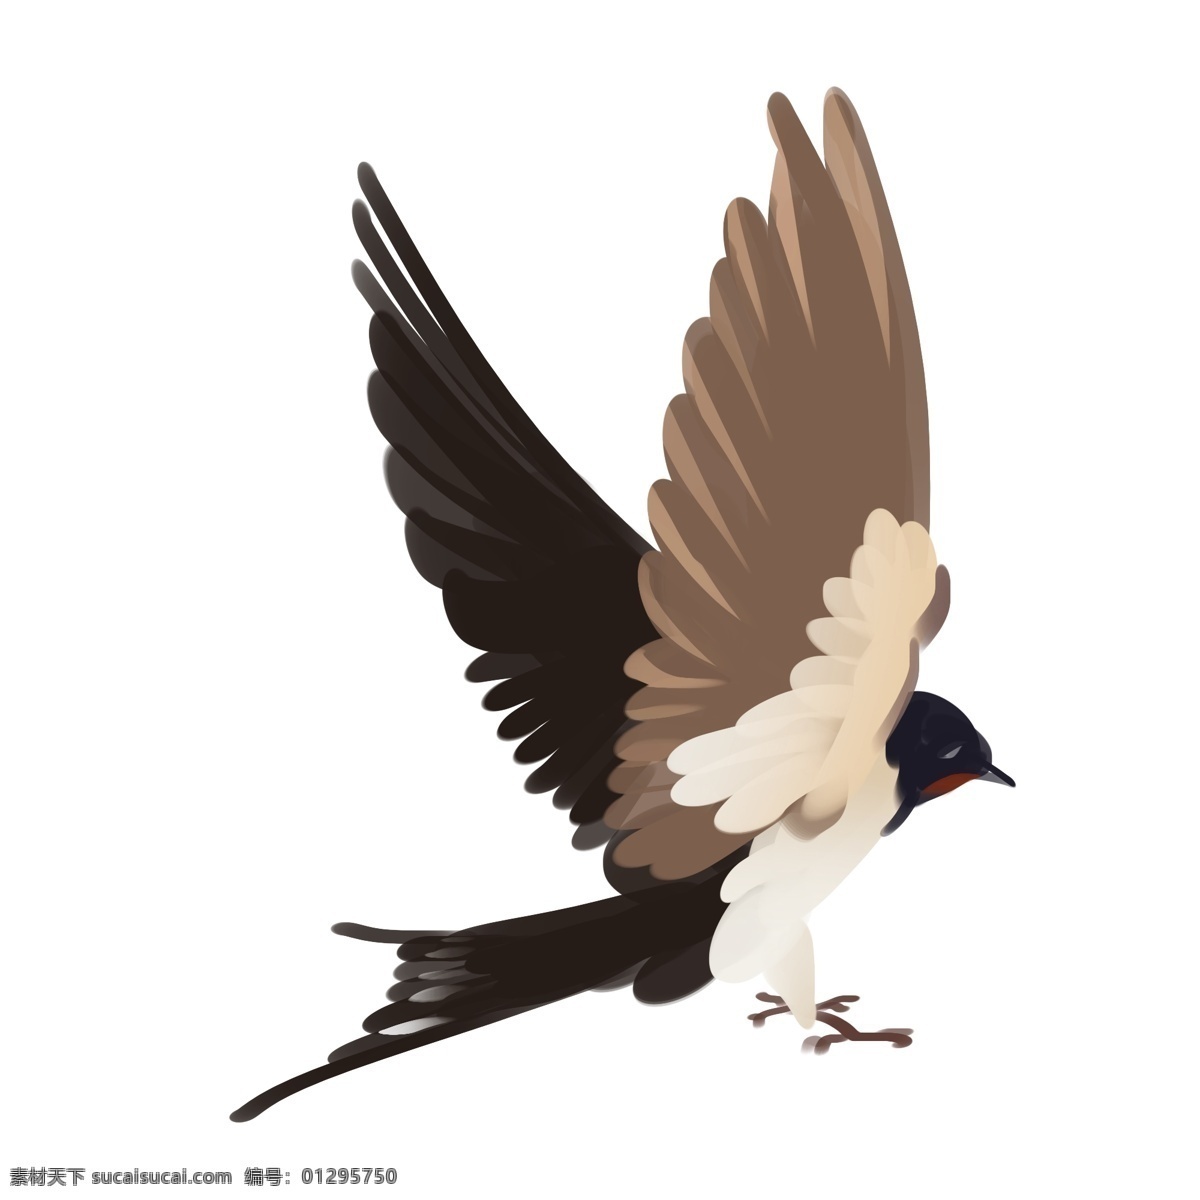 手绘 降落 燕子 插画 飞燕 鸟 动物 春季 羽毛 准备 展开的翅膀 手绘燕子 飞翔